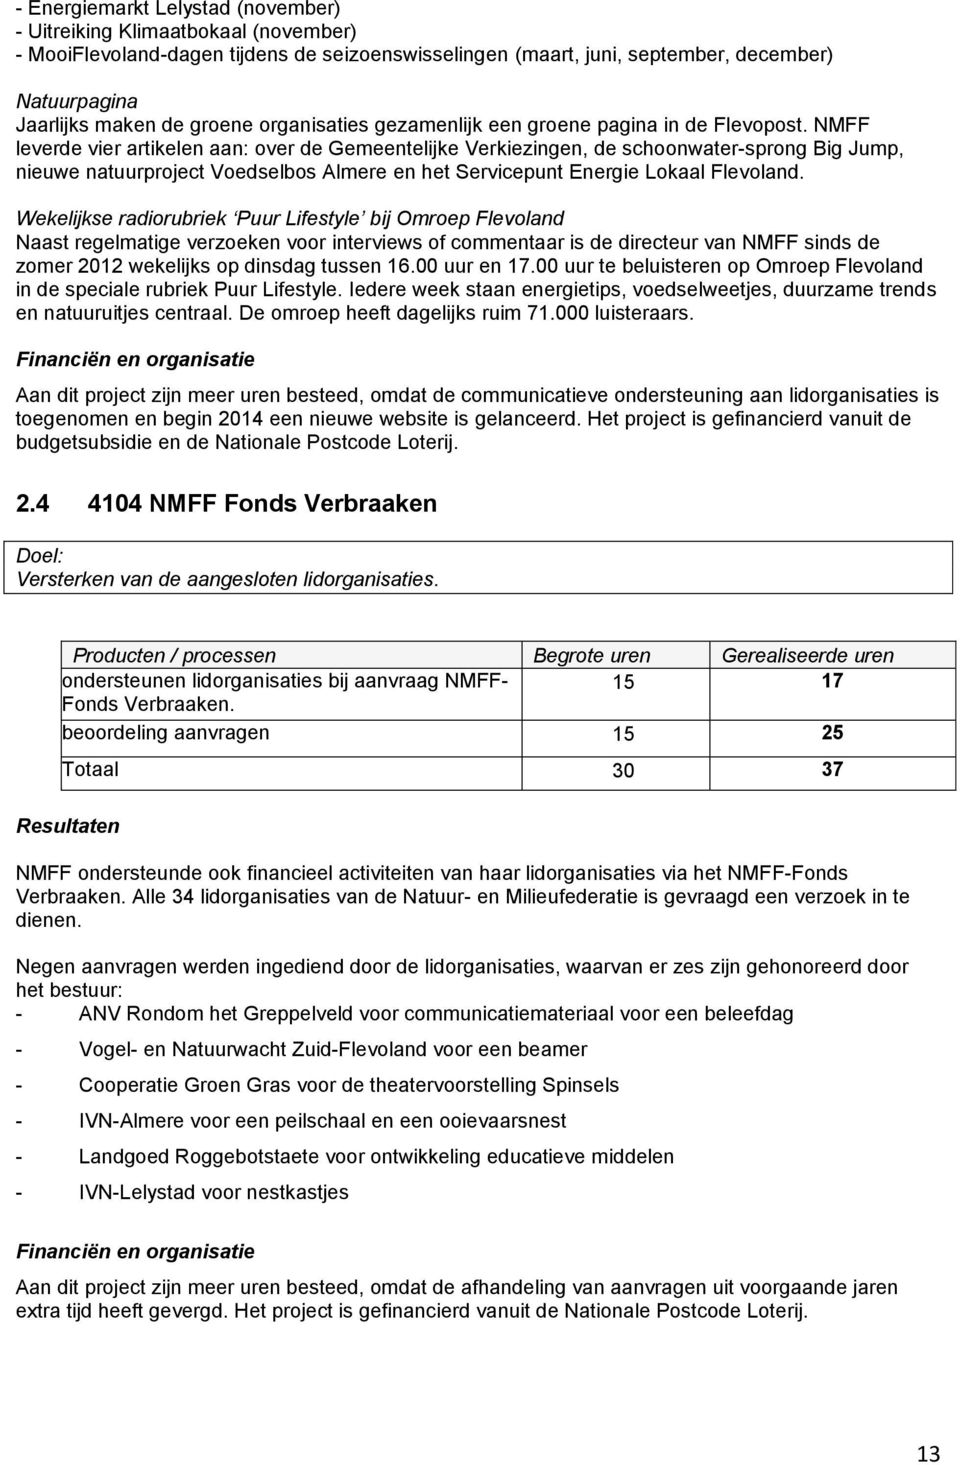 NMFF leverde vier artikelen aan: over de Gemeentelijke Verkiezingen, de schoonwater-sprong Big Jump, nieuwe natuurproject Voedselbos Almere en het Servicepunt Energie Lokaal Flevoland.